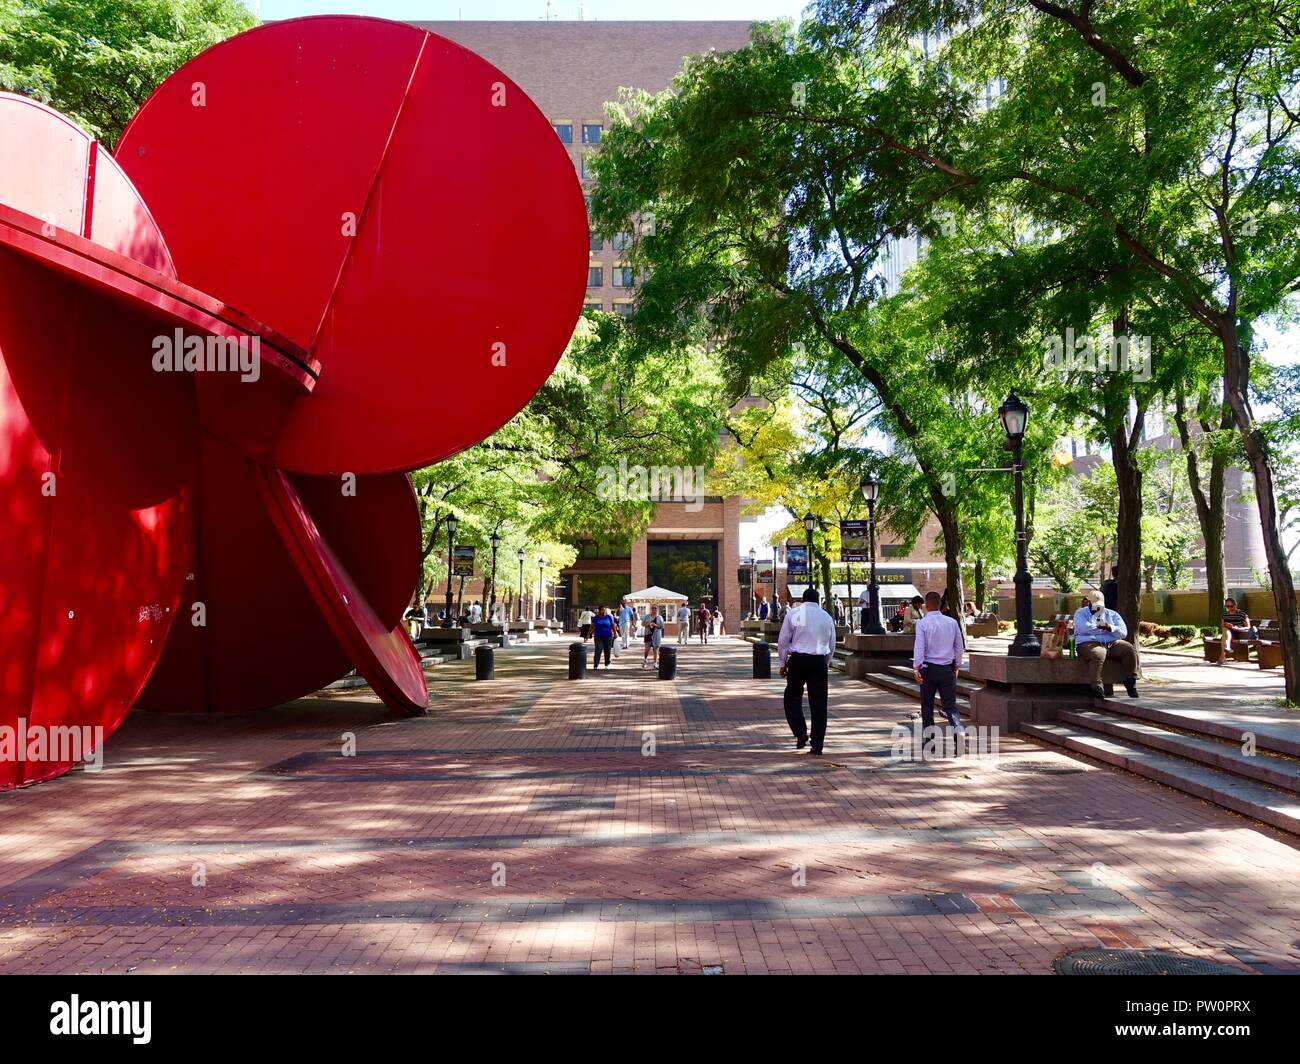 Kunst im öffentlichen Raum, 5 in 1 Skulptur von Tony Rosenthal, 1 Polizei Plaza, Manhattan, New York, NY, USA mit Menschen. Stockfoto